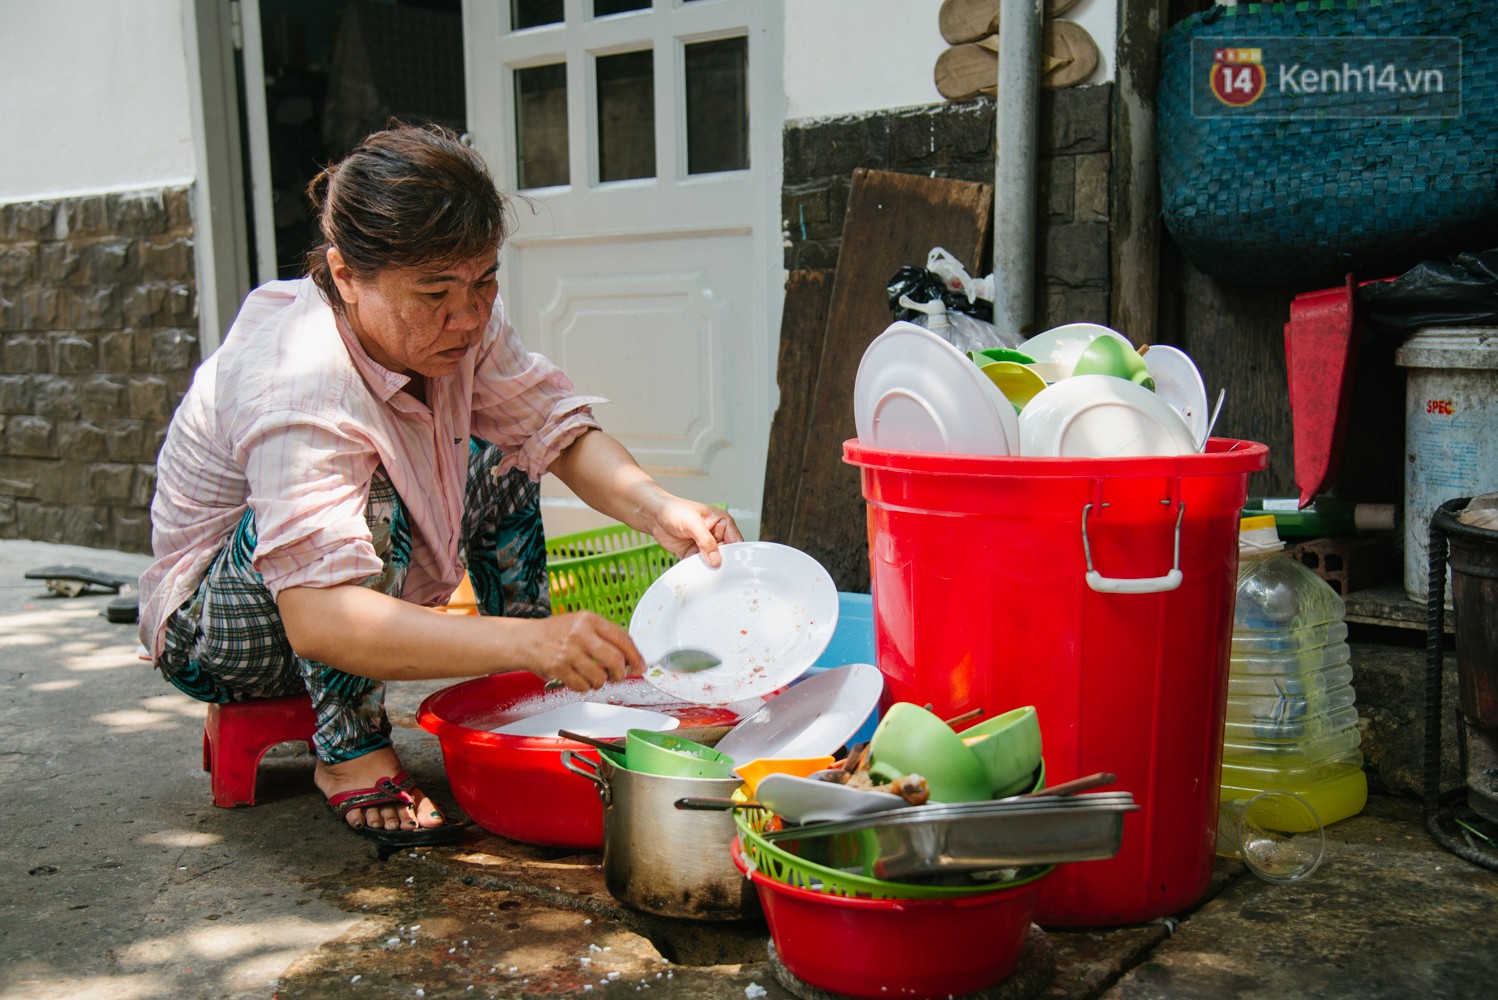 Cô bán cơm dễ thương hết sức ở Sài Gòn: 10 ngàn cũng bán, khách nhiêu tiền cũng có cơm ăn” - Ảnh 10.